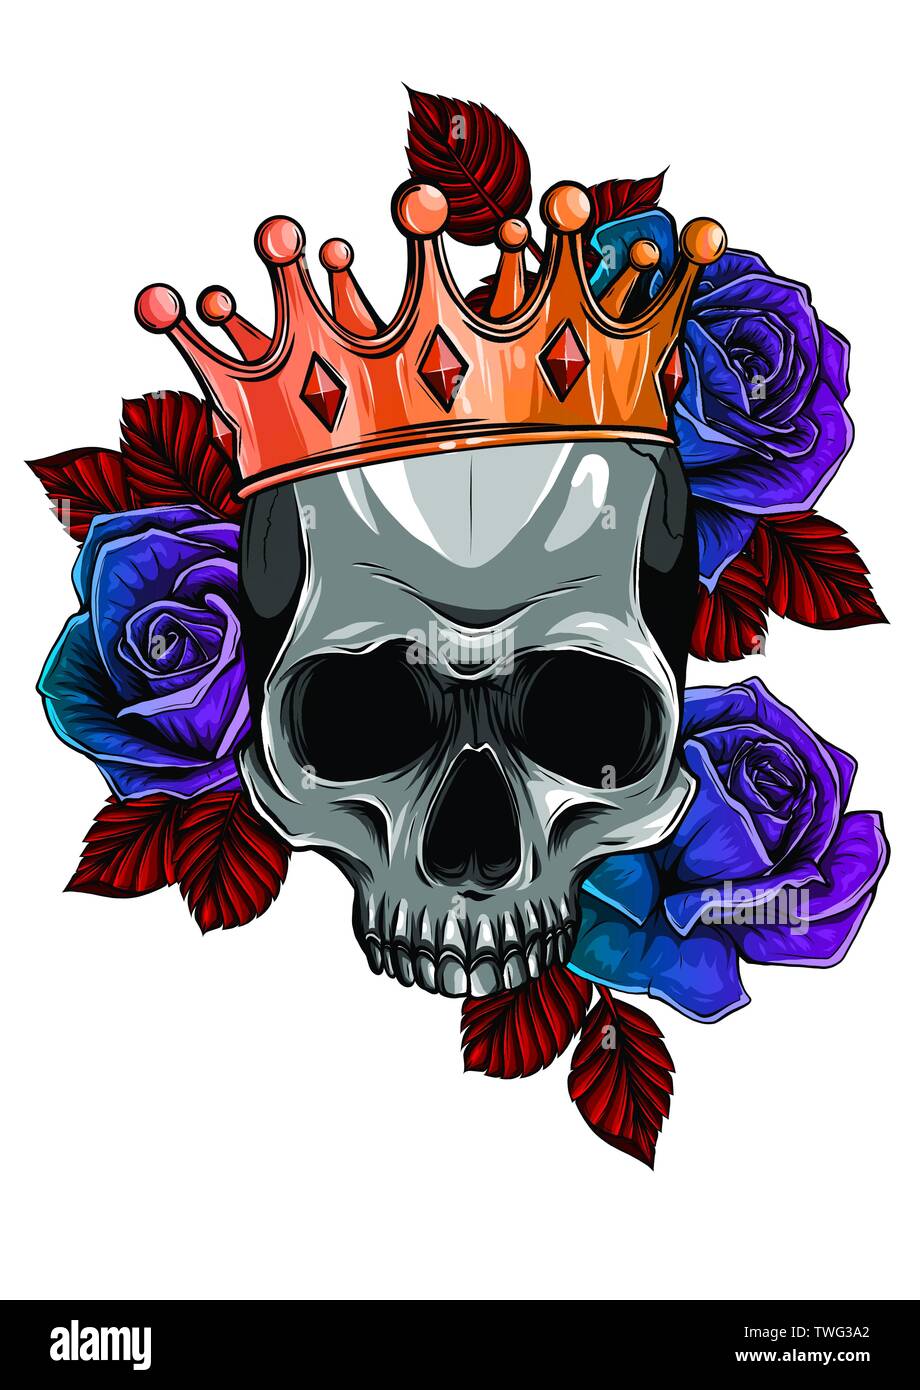 La mort de l'illustration vectorielle avec des roses de la couronne de crâne Illustration de Vecteur